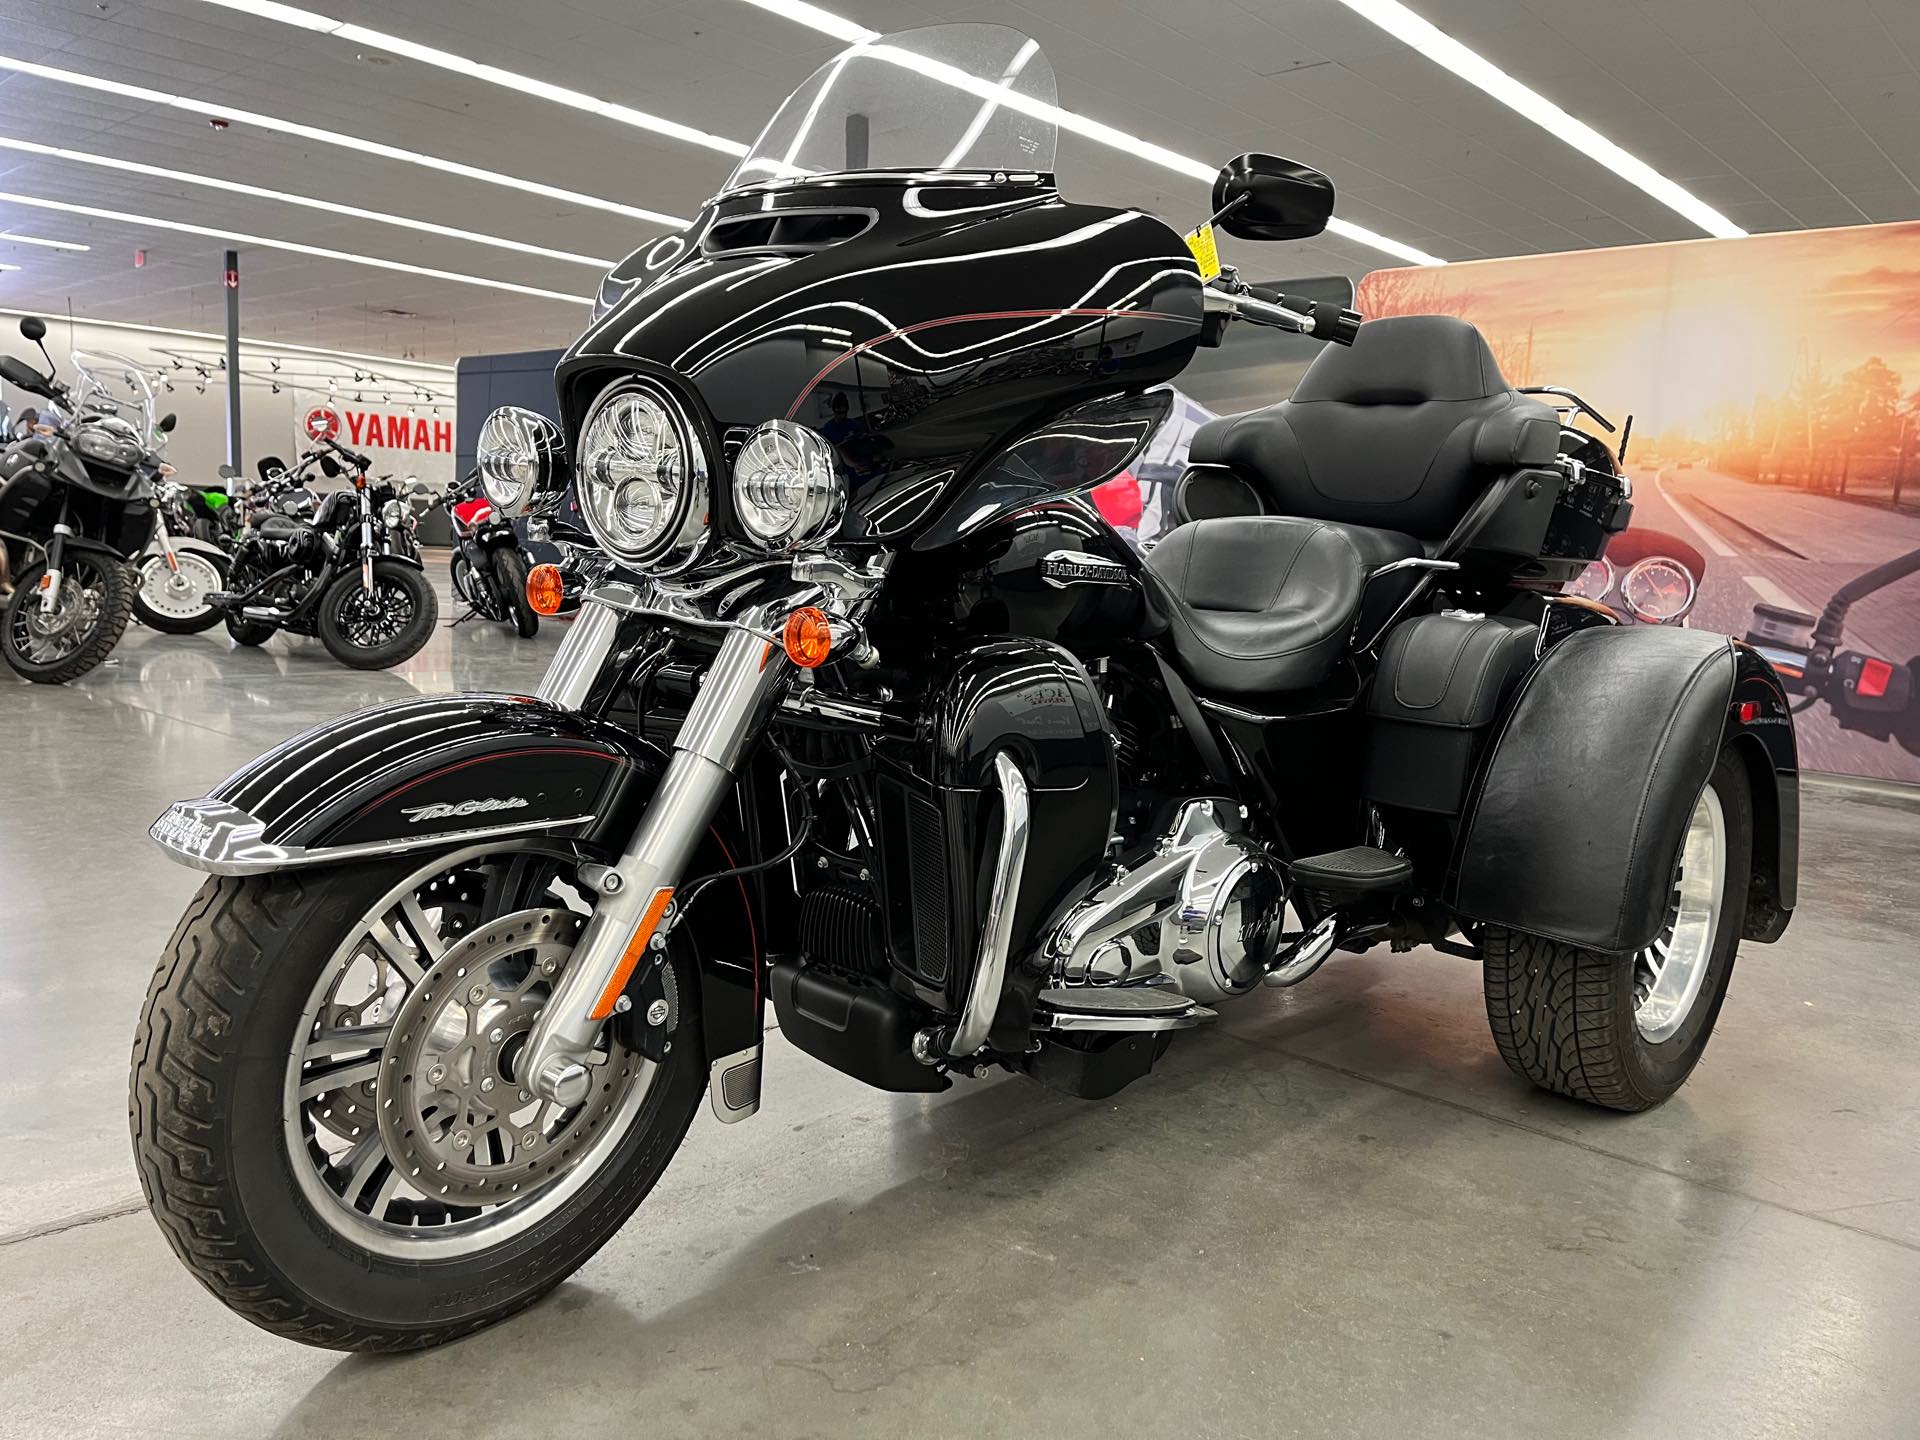 2021 Harley-Davidson Trike Tri Glide Ultra at Aces Motorcycles - Denver